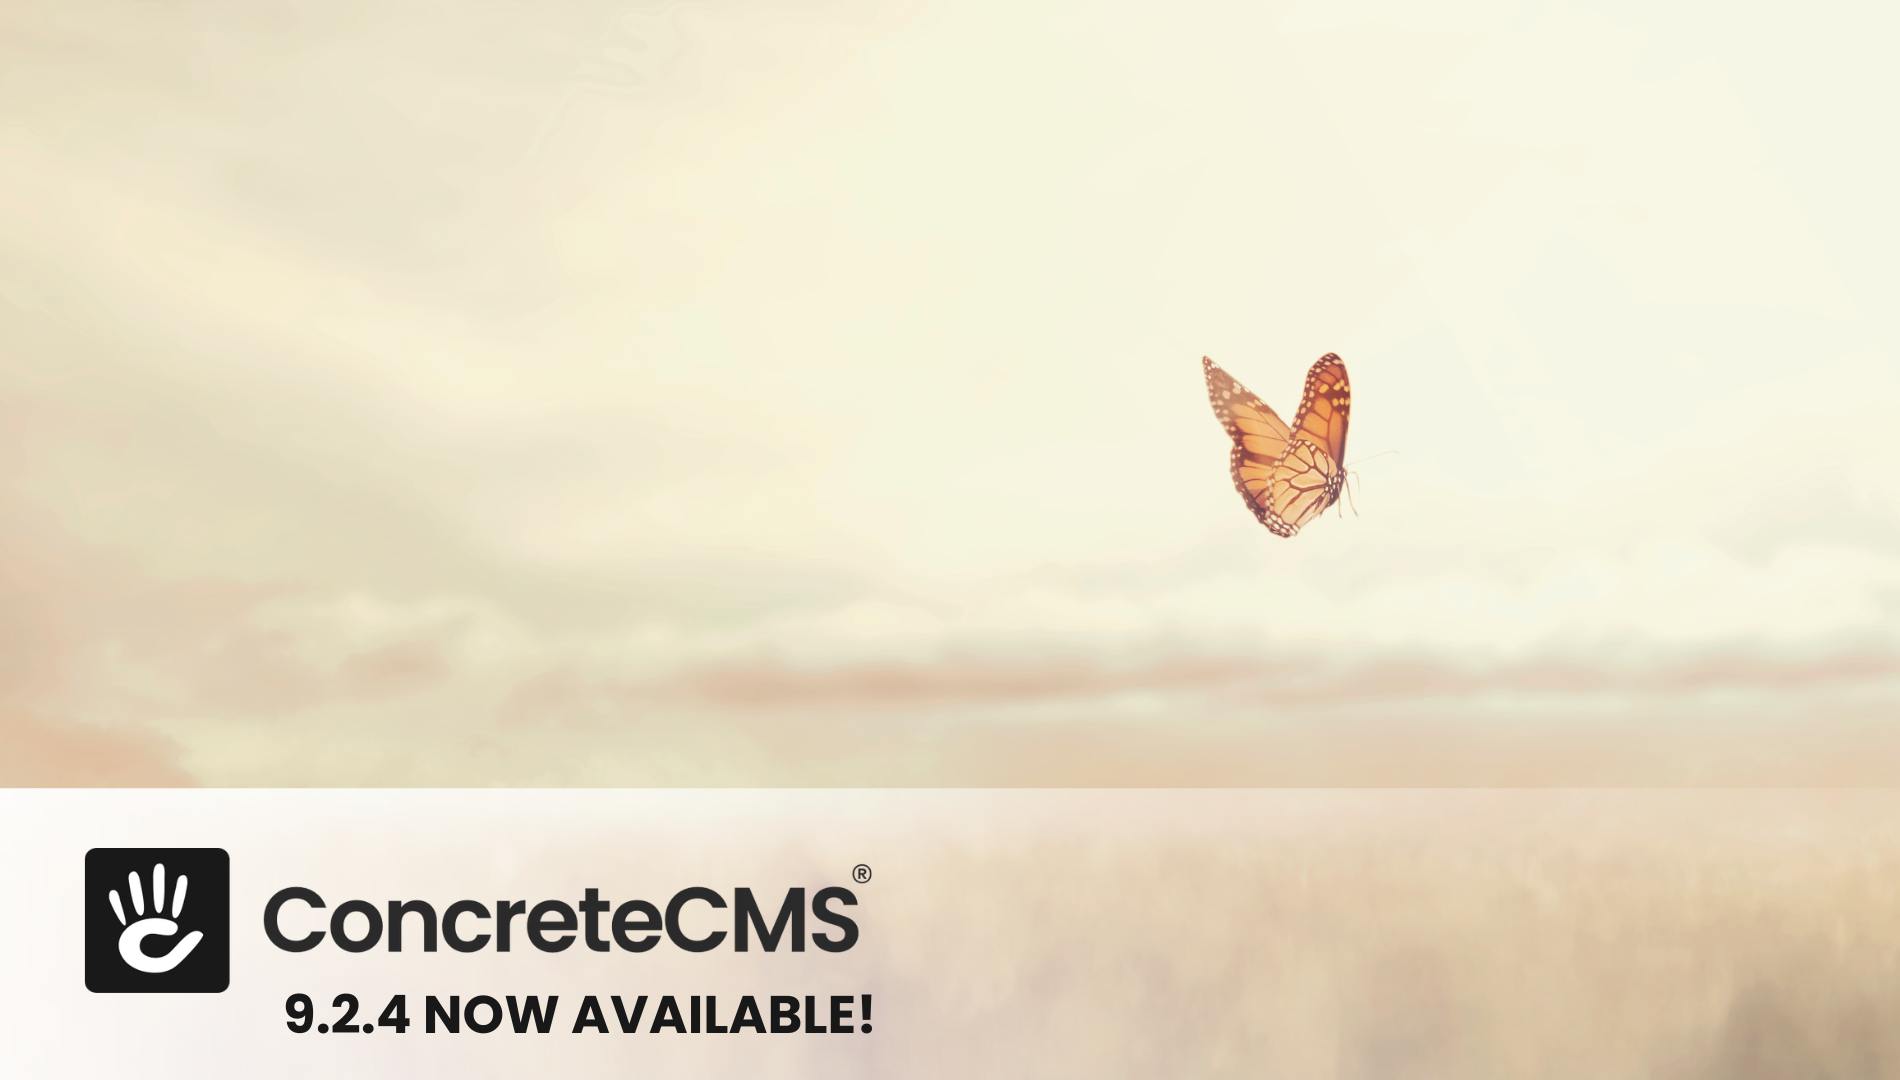 Announcing Concrete CMS 9.2.4 Release